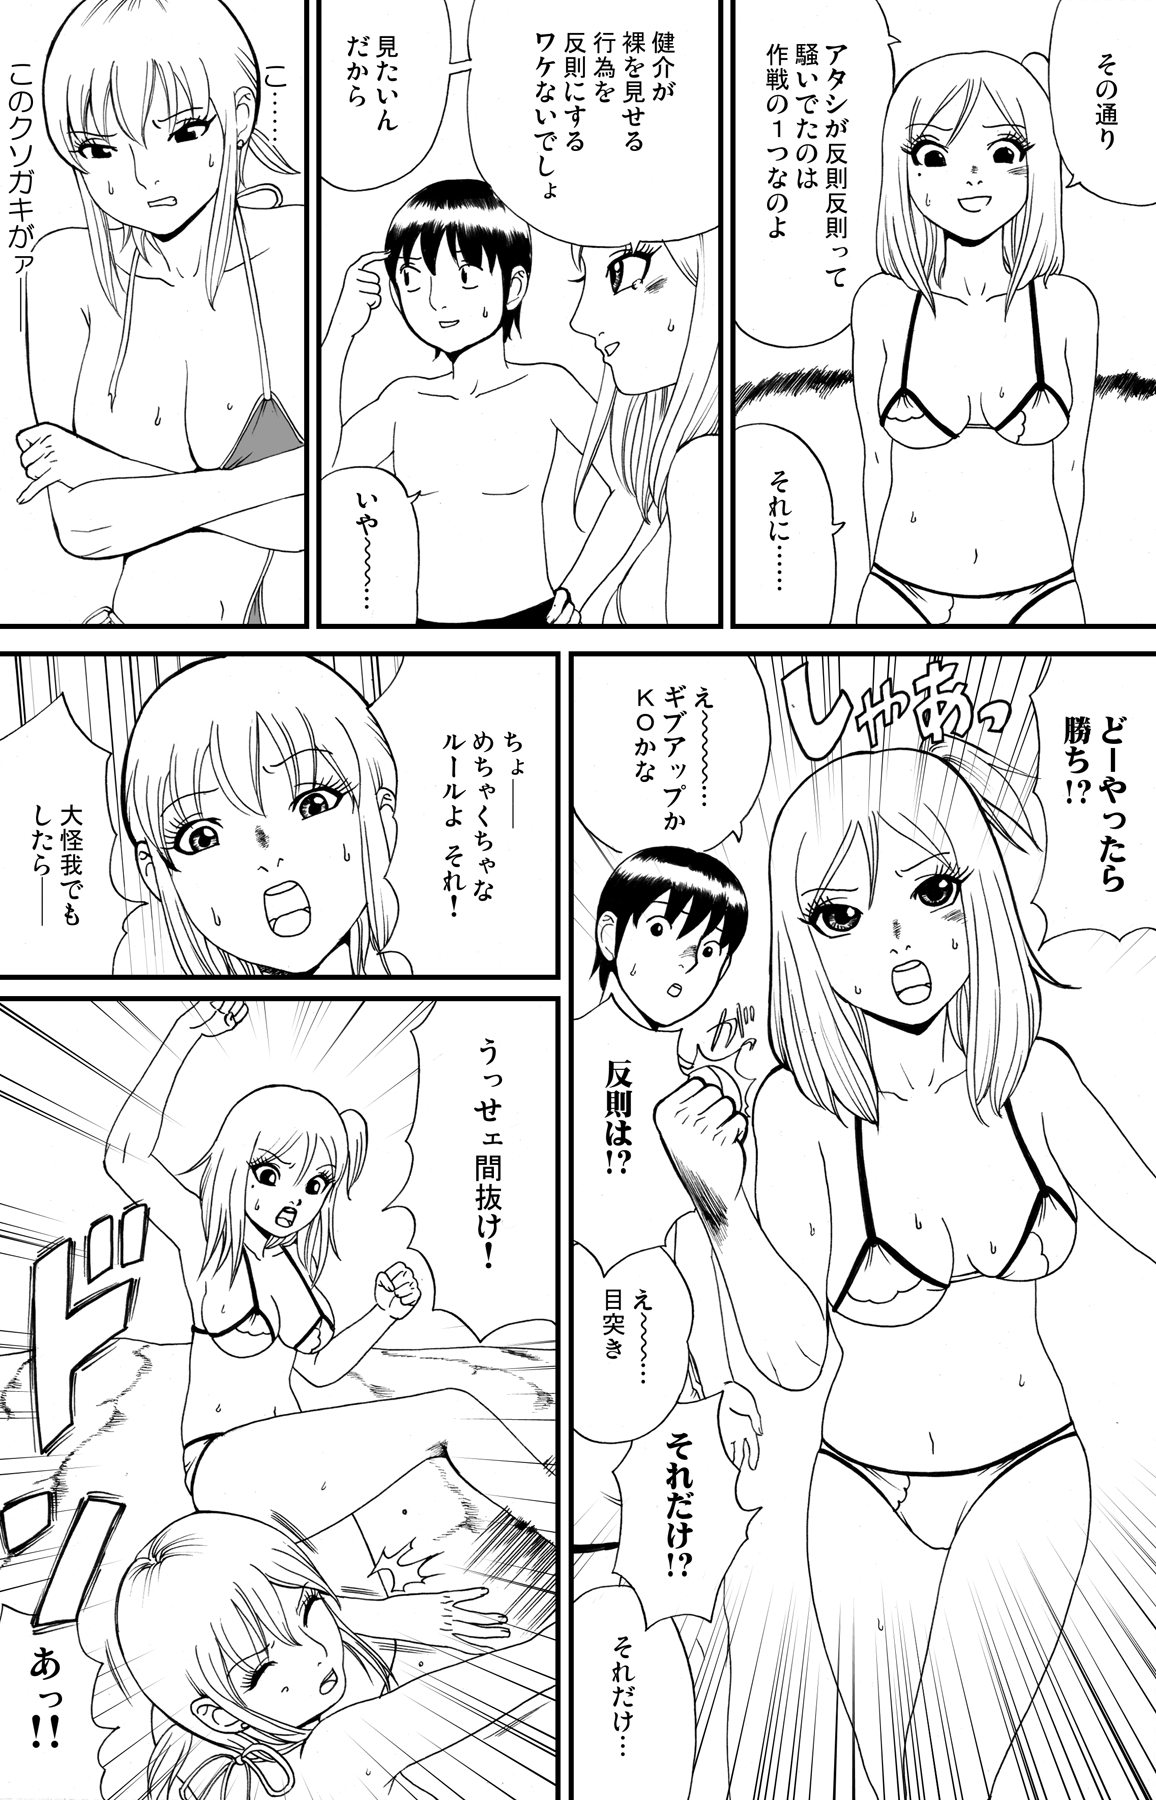 [nekomajin] fuwapoyo page 33 full